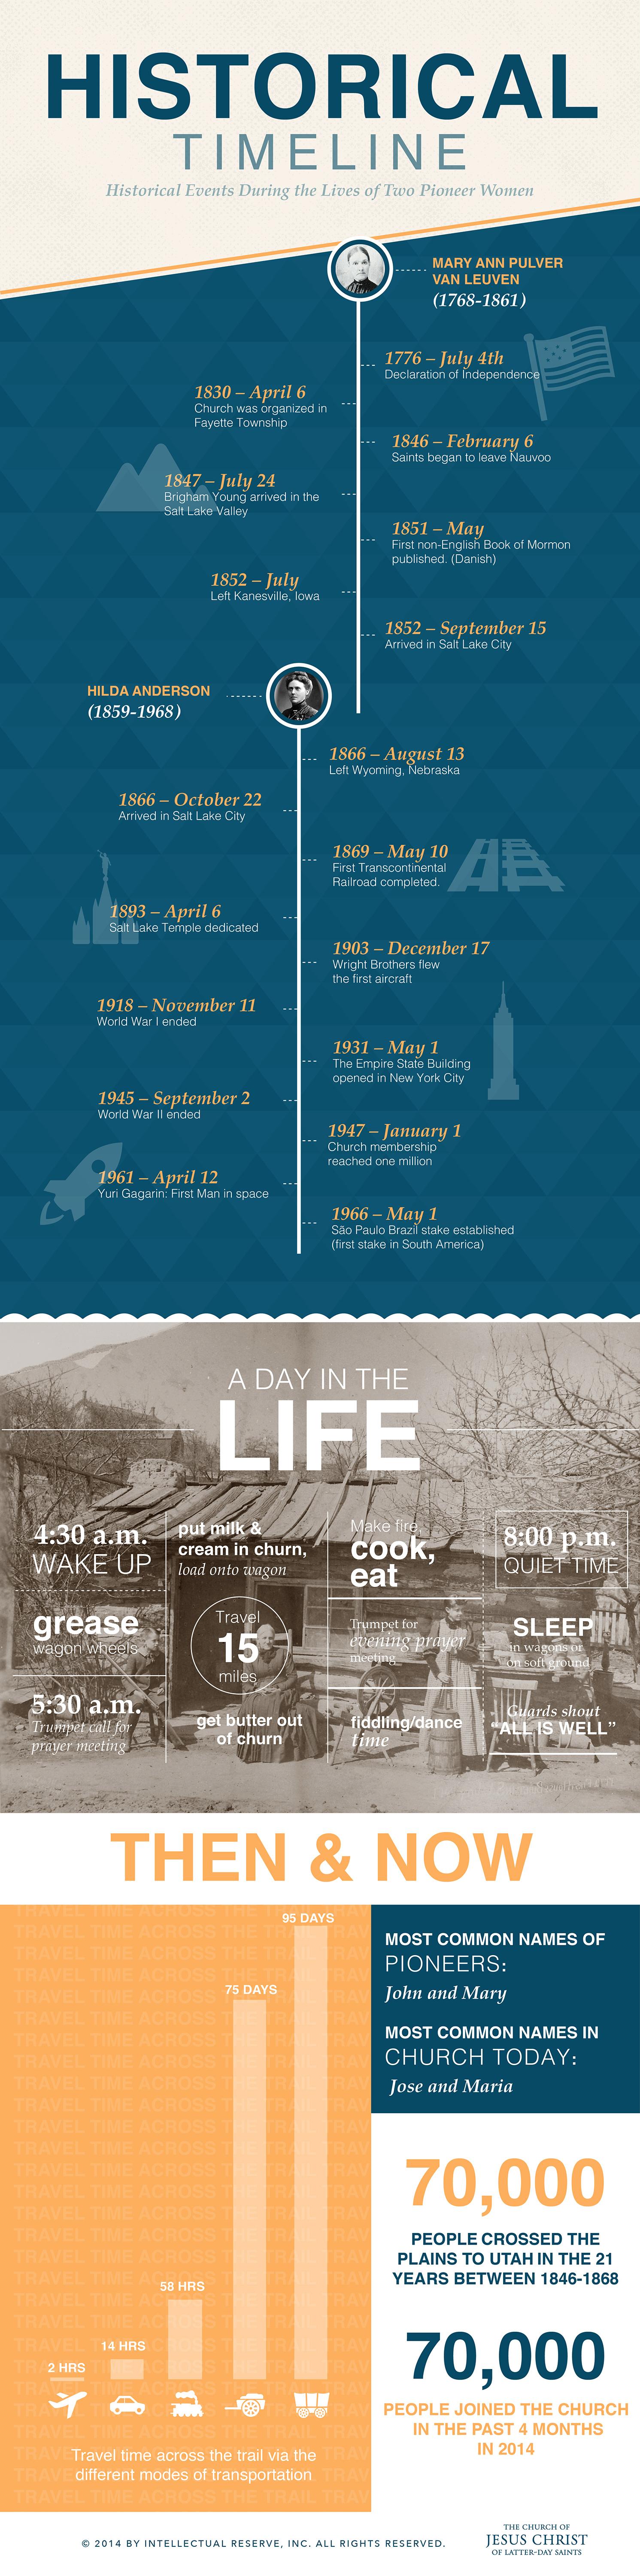 Timeline of Mormon Pioneer History – The Trek West